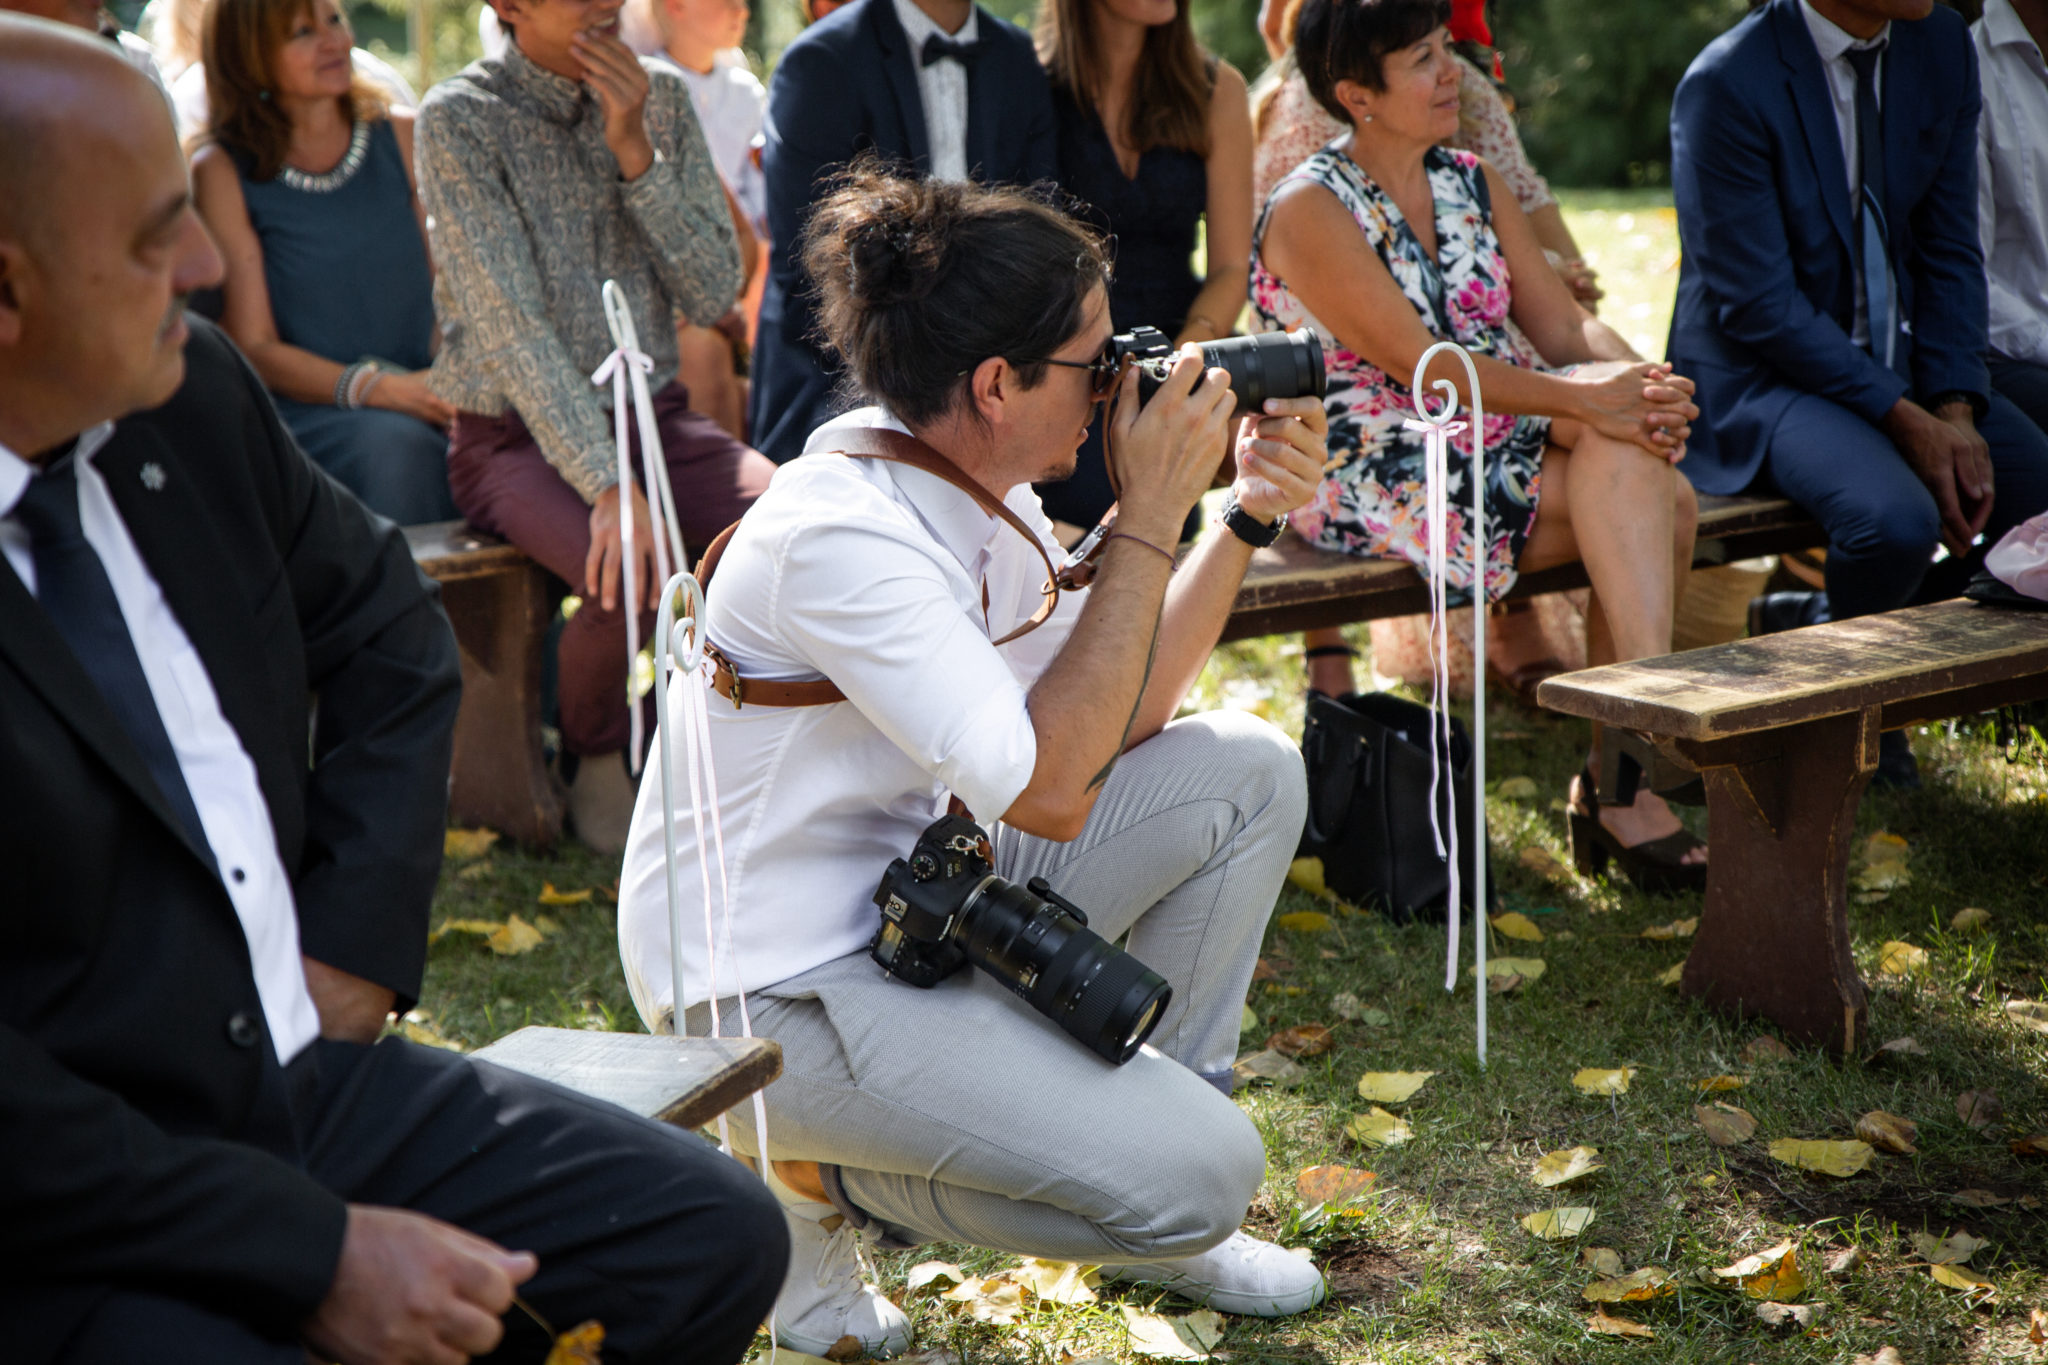 Portrait du photographe de mariage Aurélien Kirchner en train de photographier des mariés pendant la cérémonie laïque au milieu des invités